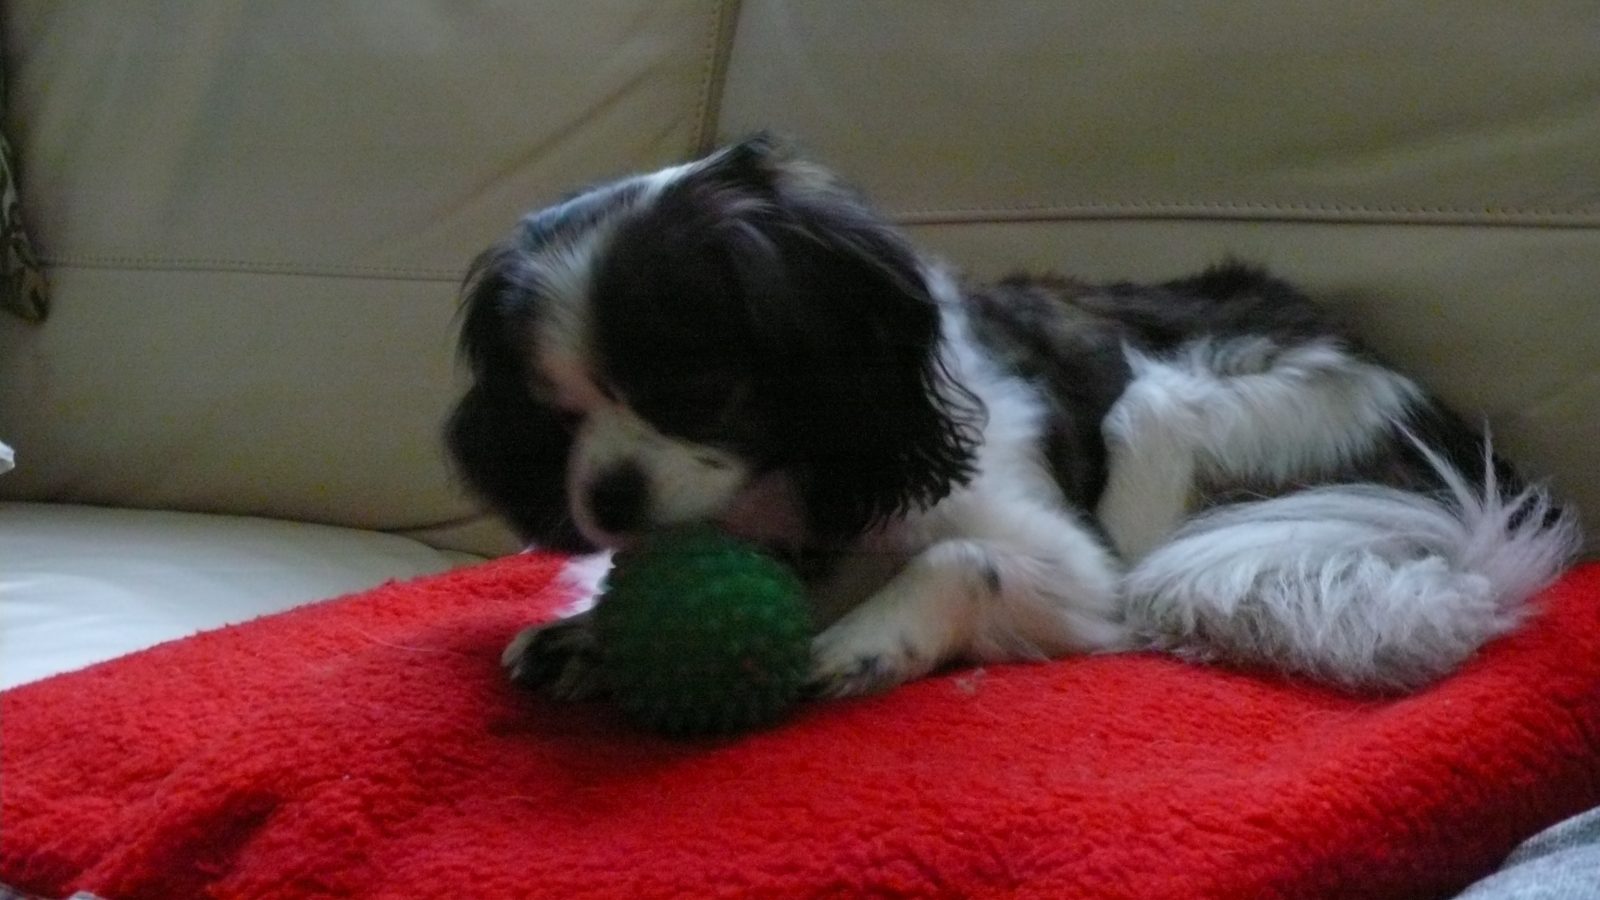 Dog with ball on rug